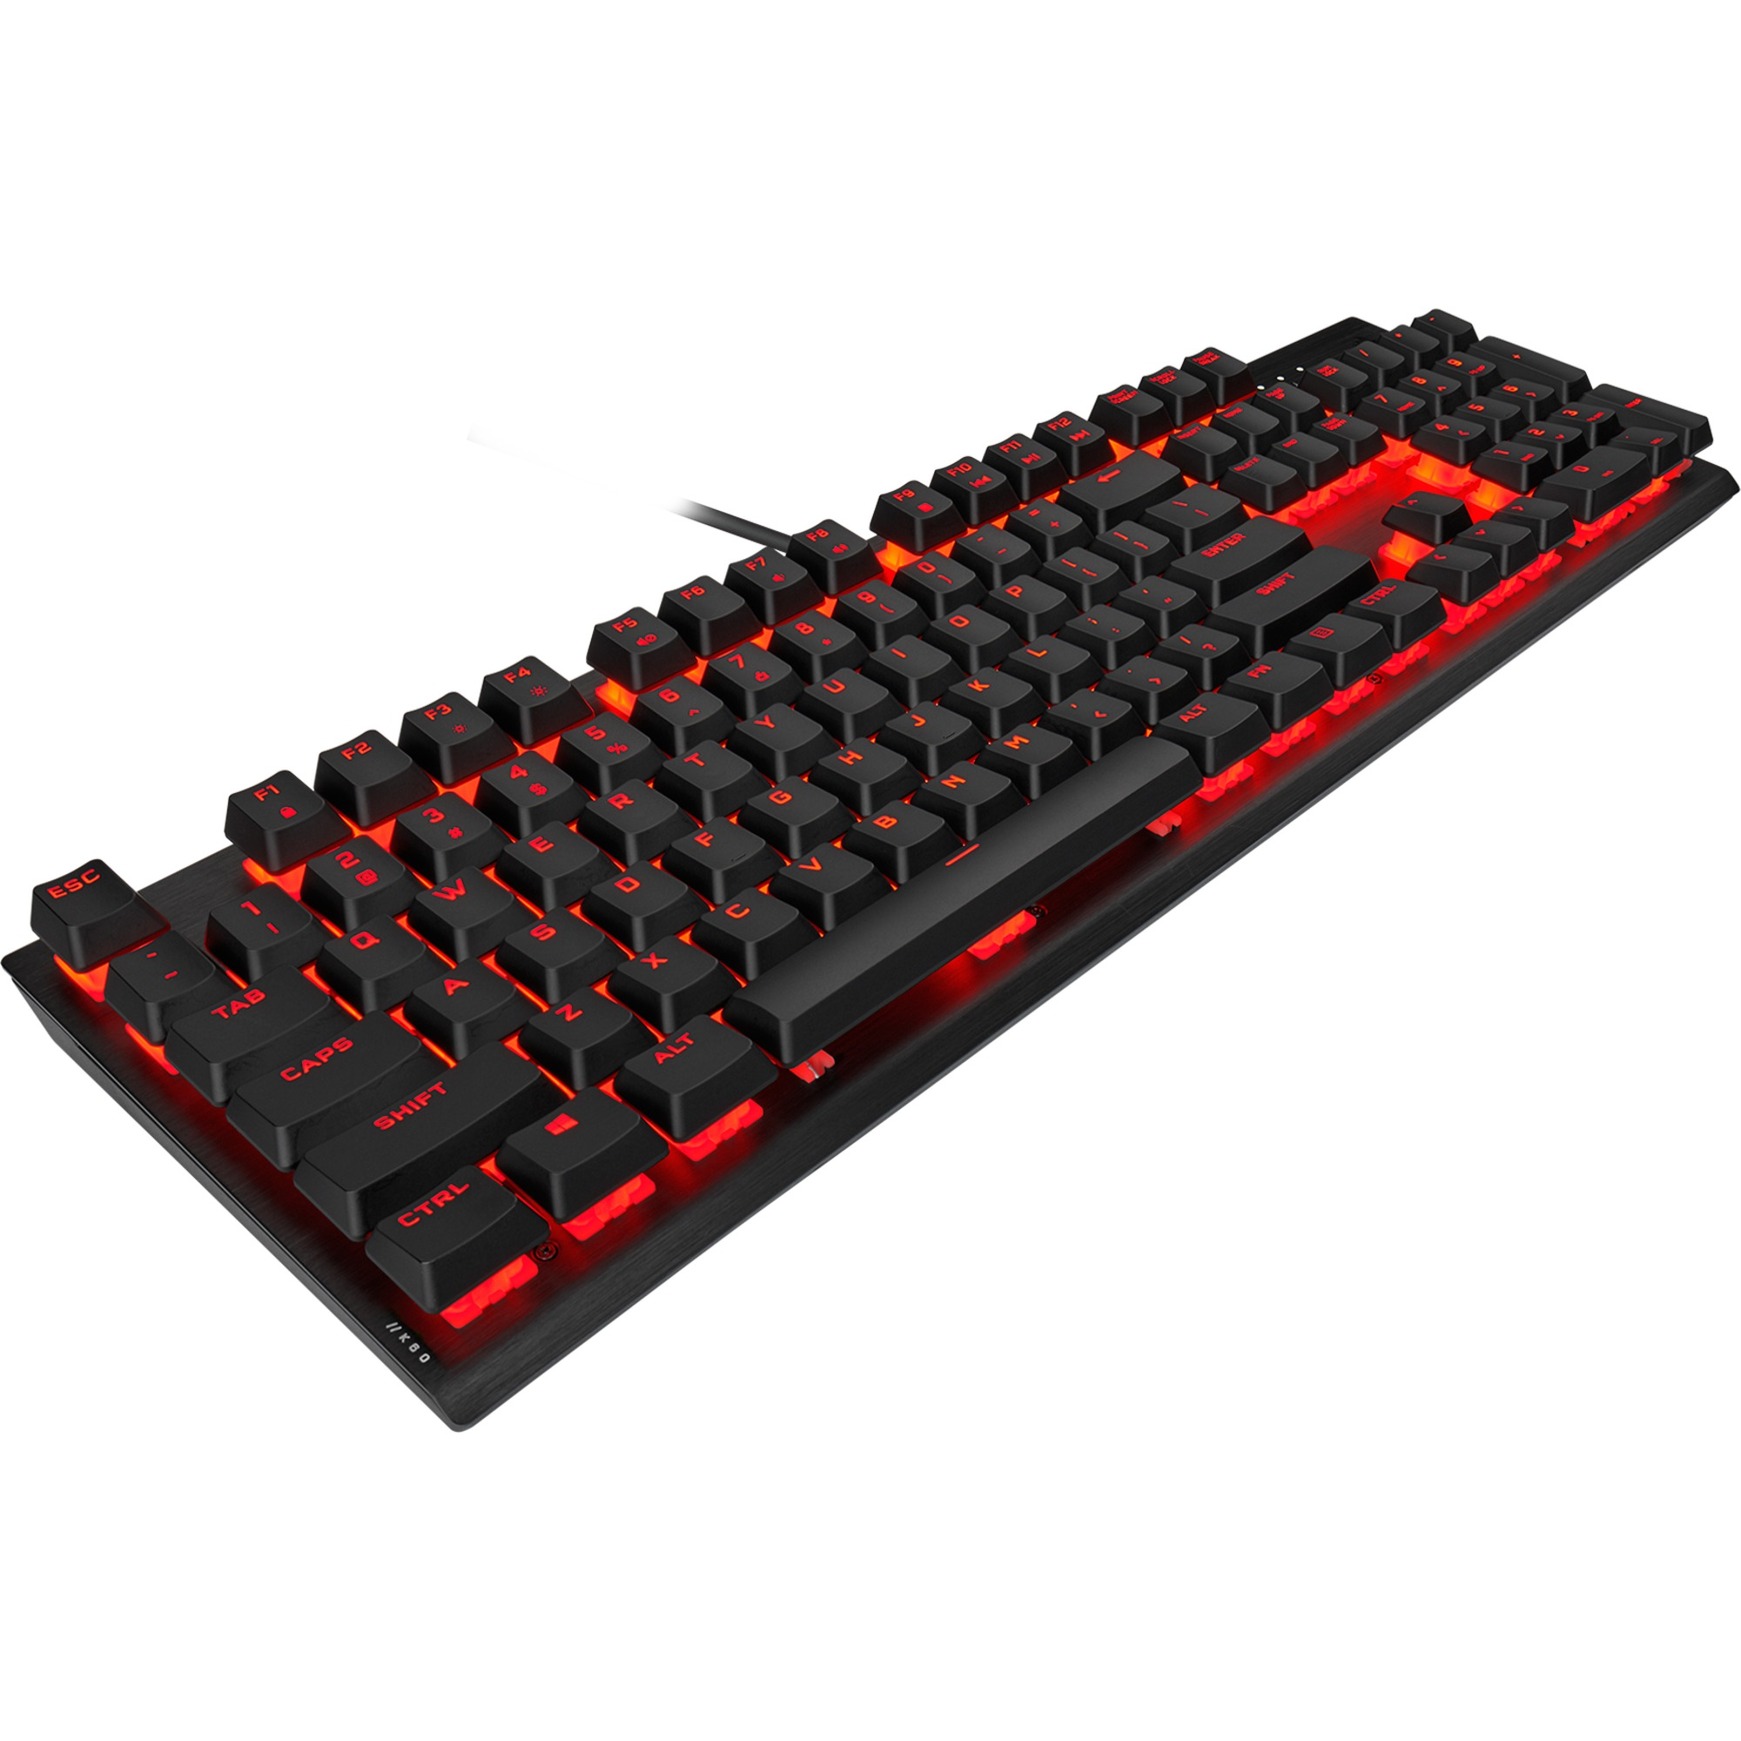 Image of Alternate - K60 PRO, Gaming-Tastatur online einkaufen bei Alternate